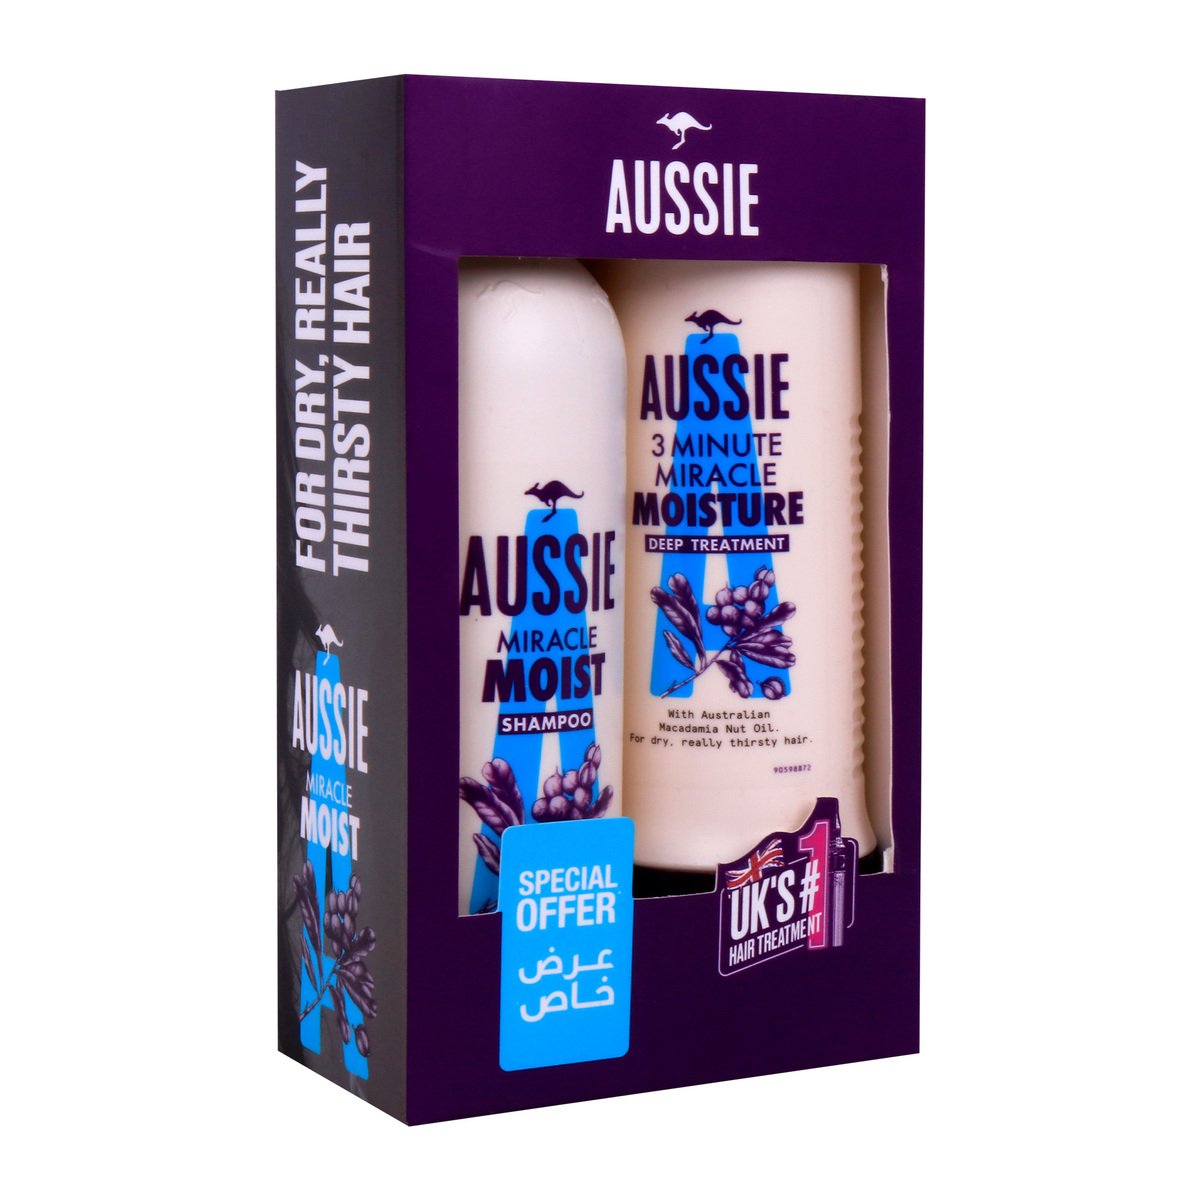 Aussie 3Minute Miracle Moist Deep Treatment 250ml +Aussie Miracle Moist Shampoo 300ml